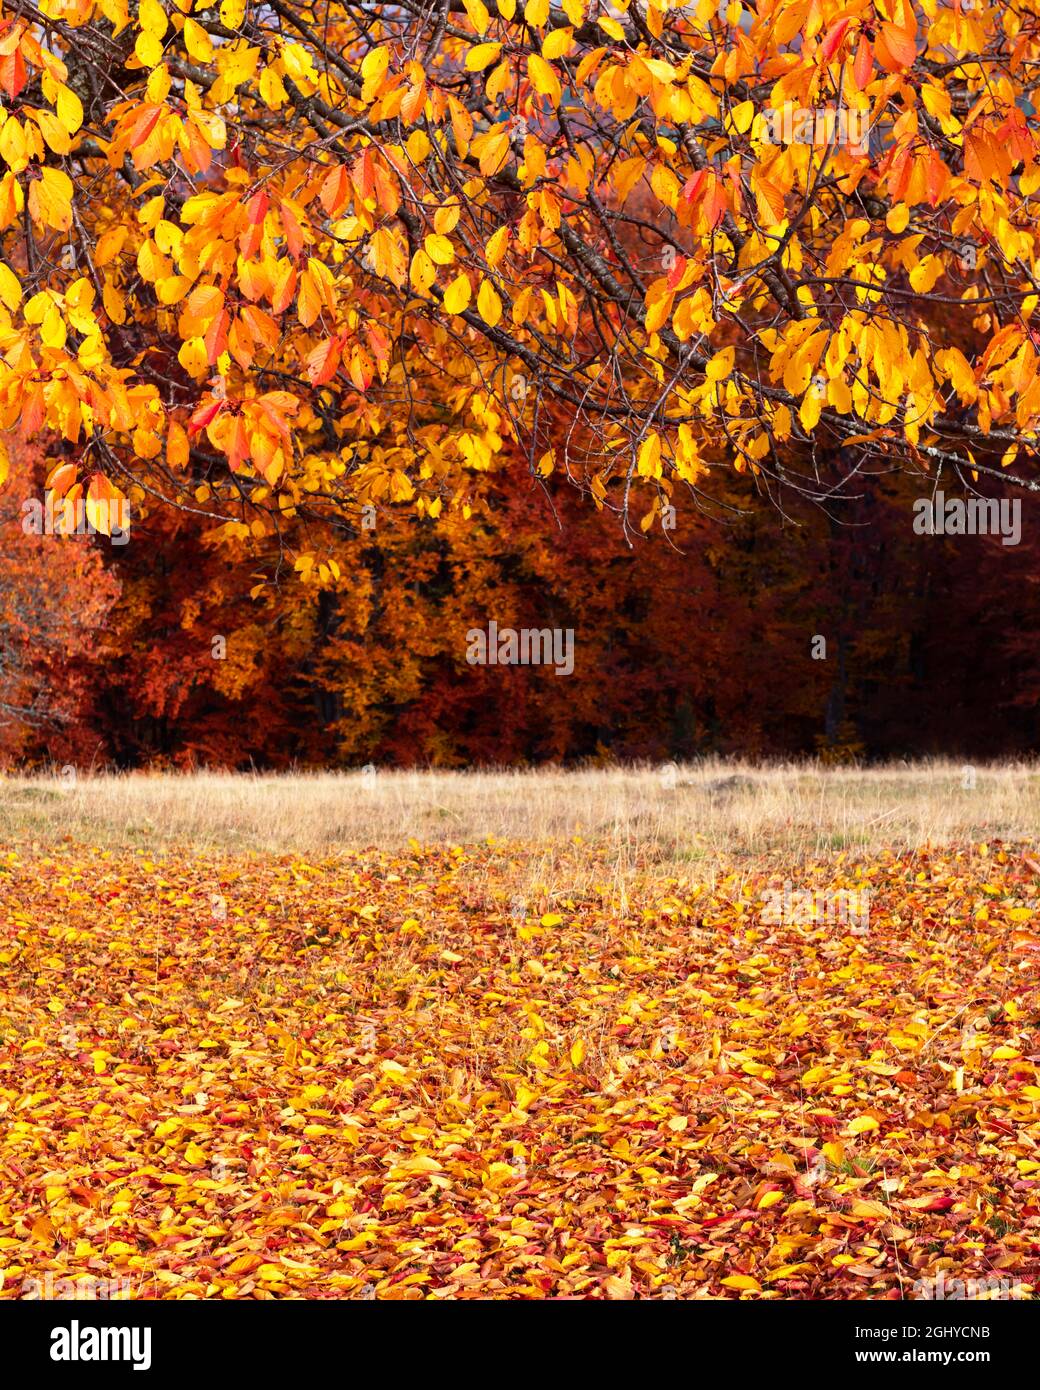 Branches de hêtre colorées avec des folies jaune et orange dans la forêt d'automne. Scène d'automne pittoresque dans les montagnes Carpathian, Ukraine. Photographie de paysage Banque D'Images